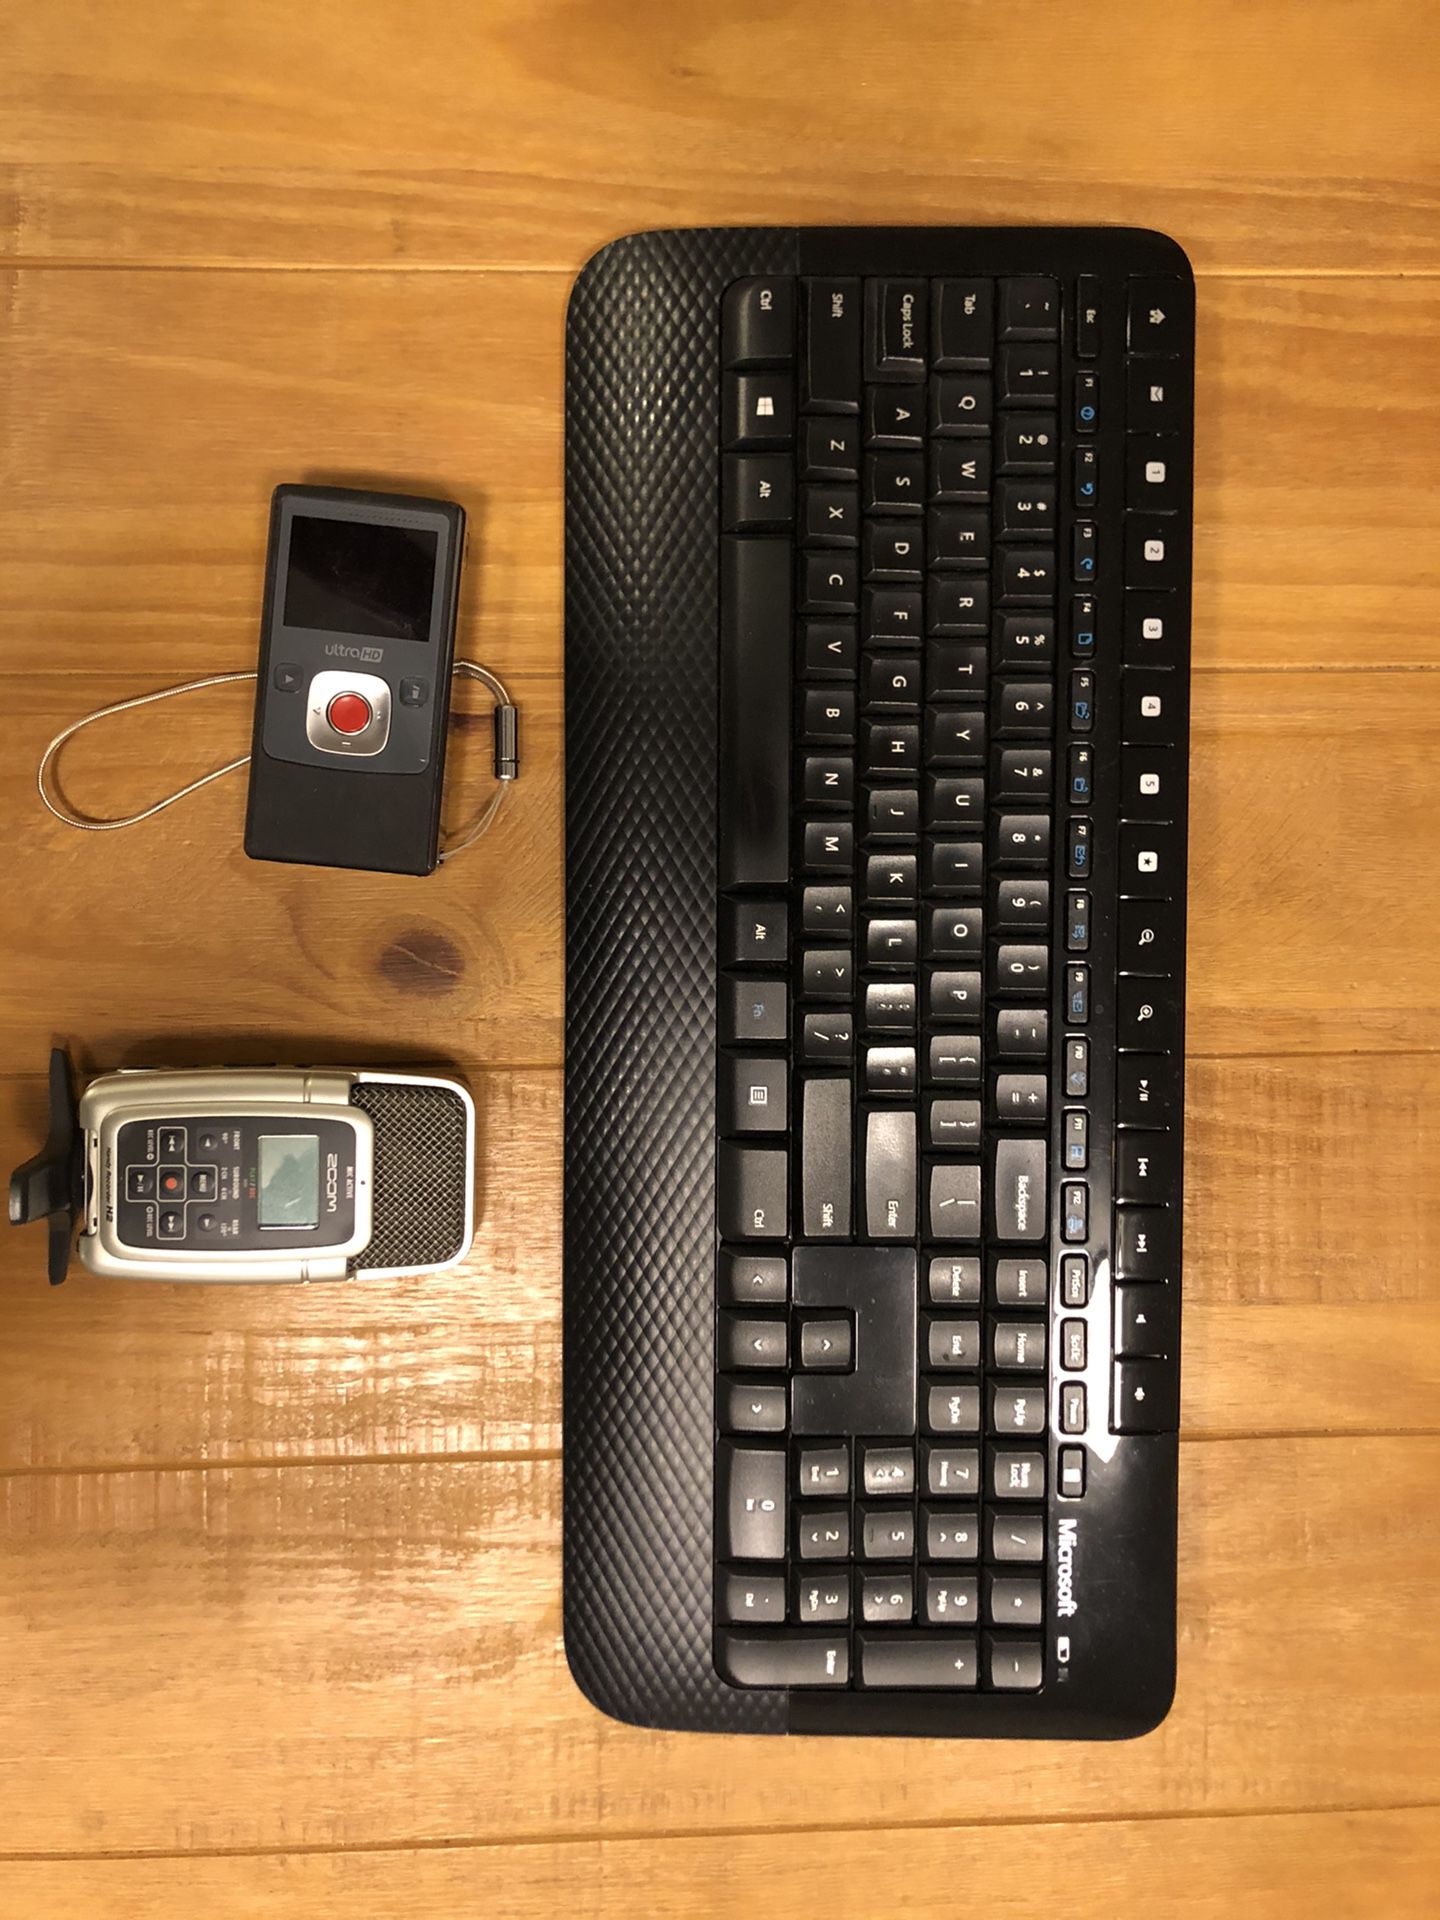 Keyboard and camera and mic